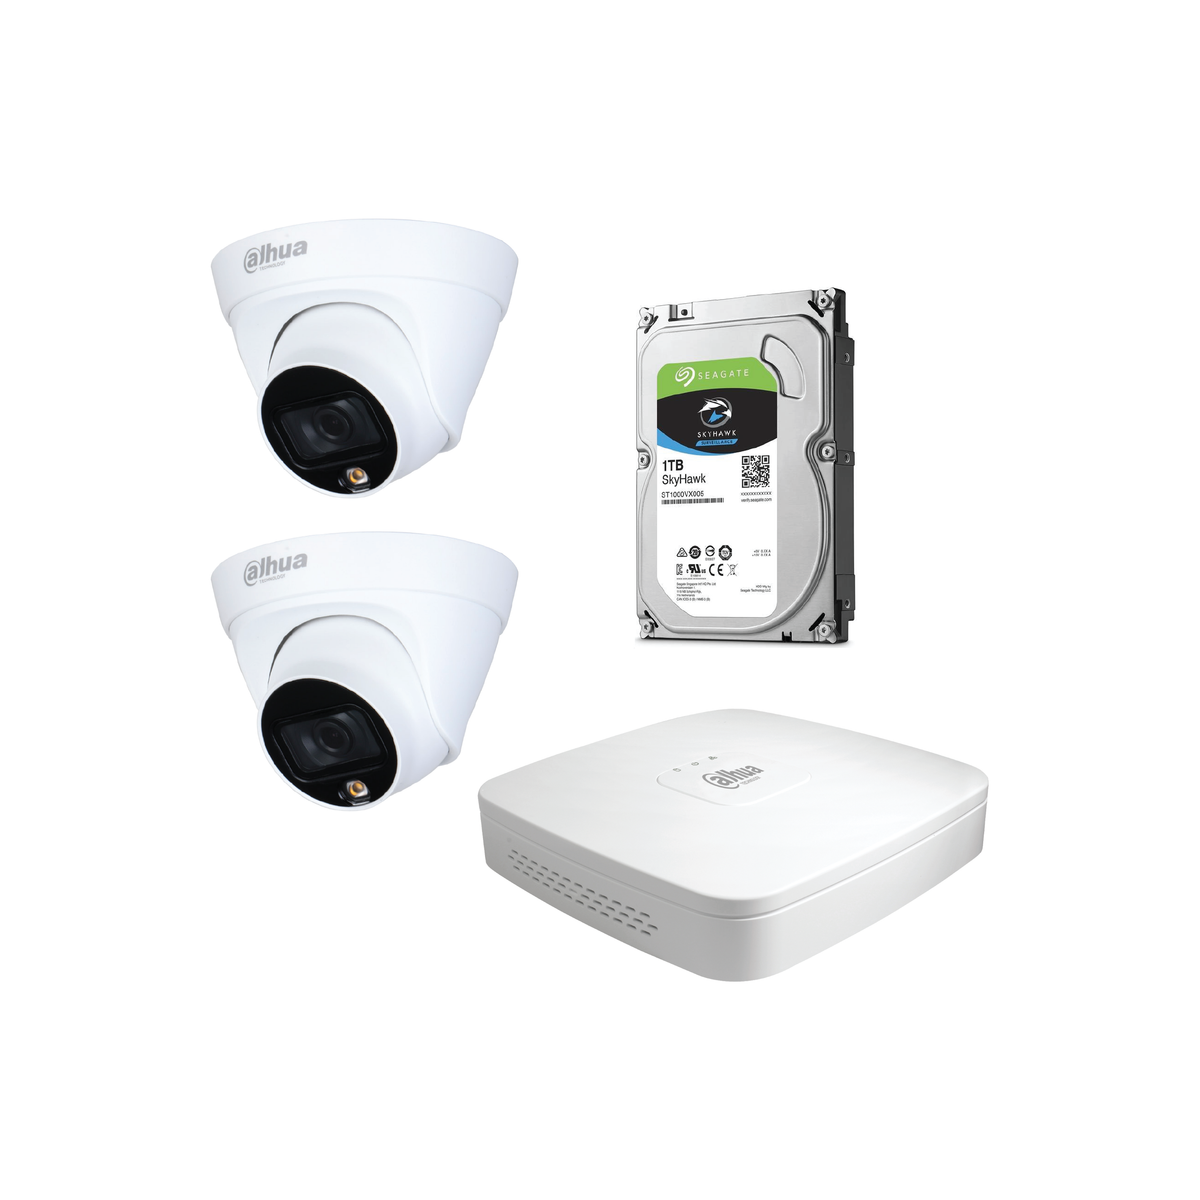 Dahua 2MP CCTV Kit: NVR2104-P-4KS2- 2 x HDW 1239 T1P-LED-0280B-S4- 1 x 1TB HDD